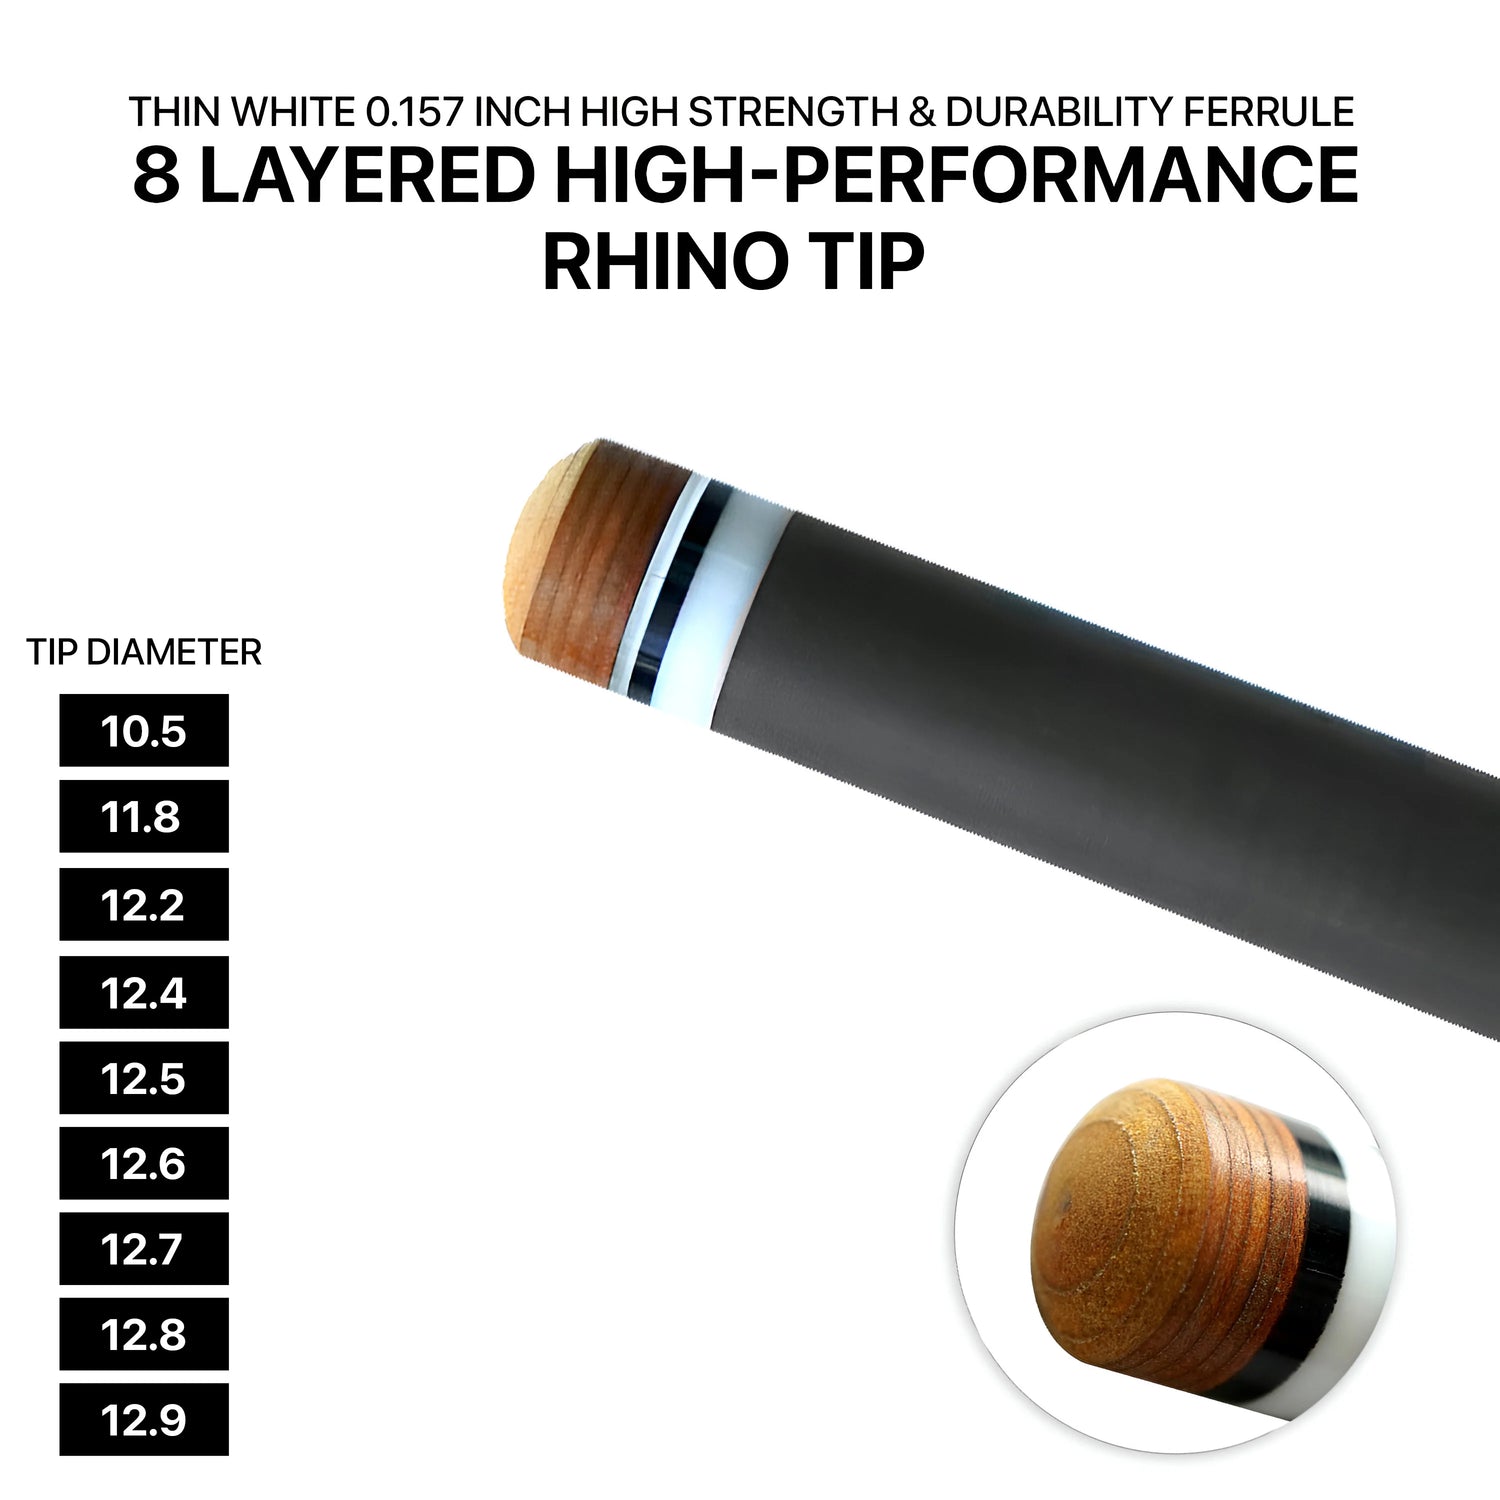 Rhino - 710mm (28'') / Q-loc Carbon Carom Single Shaft 12mm